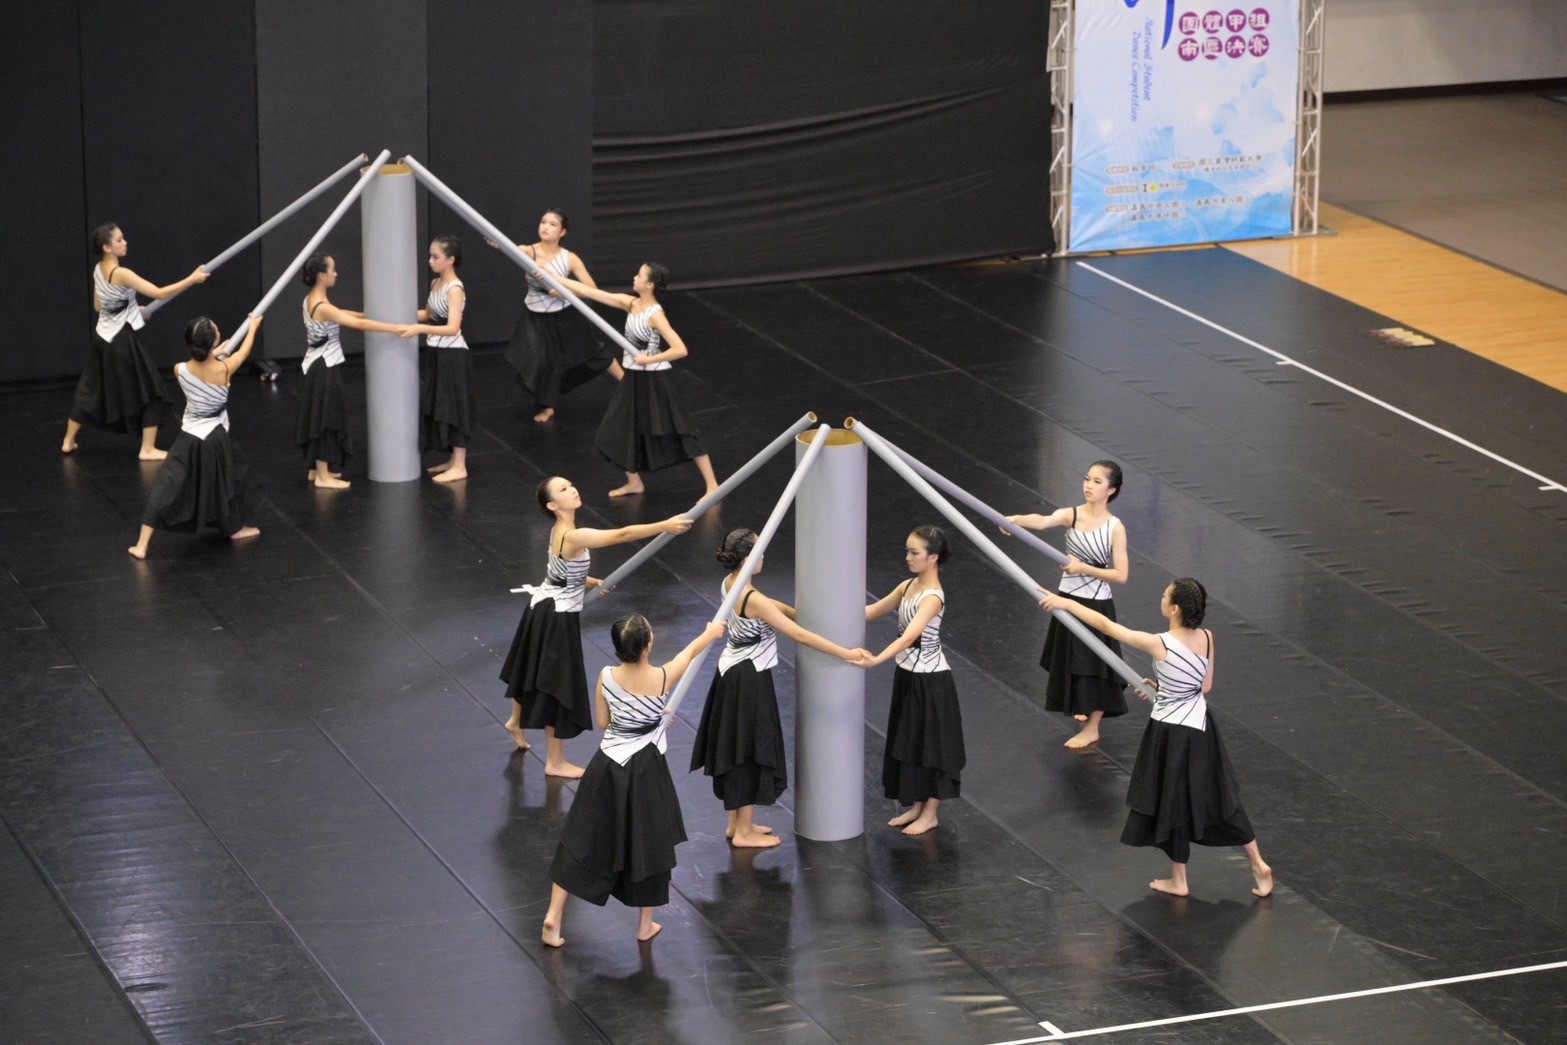 臺南400舞出精彩!全國舞蹈比賽榮獲團體特優11隊 個人特優3人